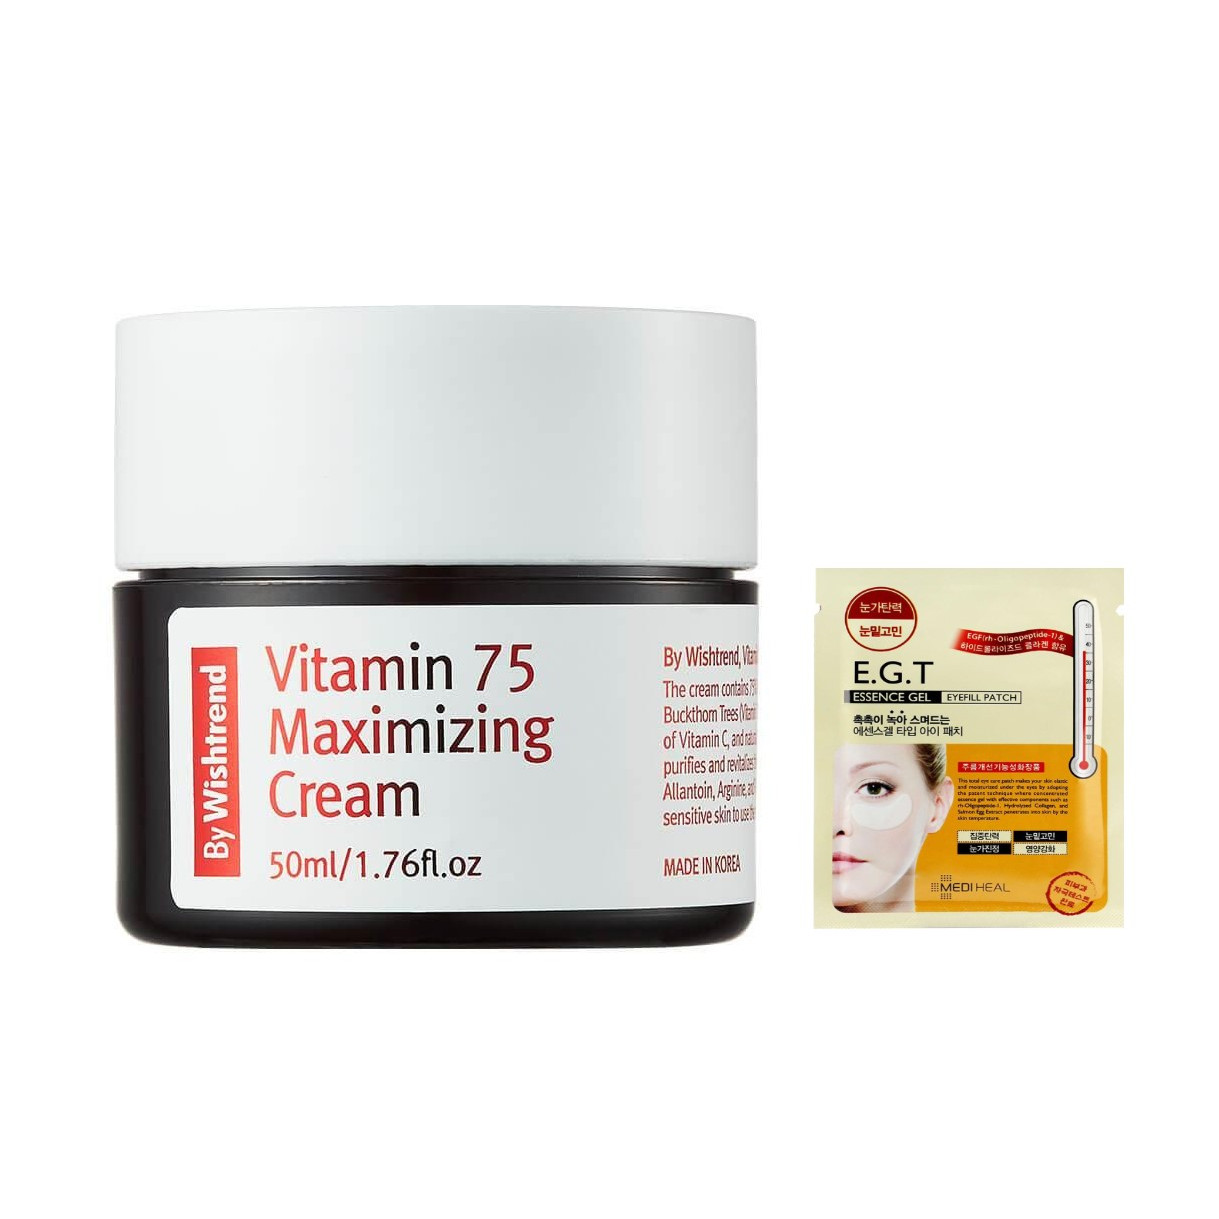 Kem Dưỡng Sáng Da, Chống Lão Hoá Giàu Vitamin By Wishtrend Vitamin 75 Maximizing Cream 50ml + Tặng Kèm Mặt Nạ Mắt Mediheal